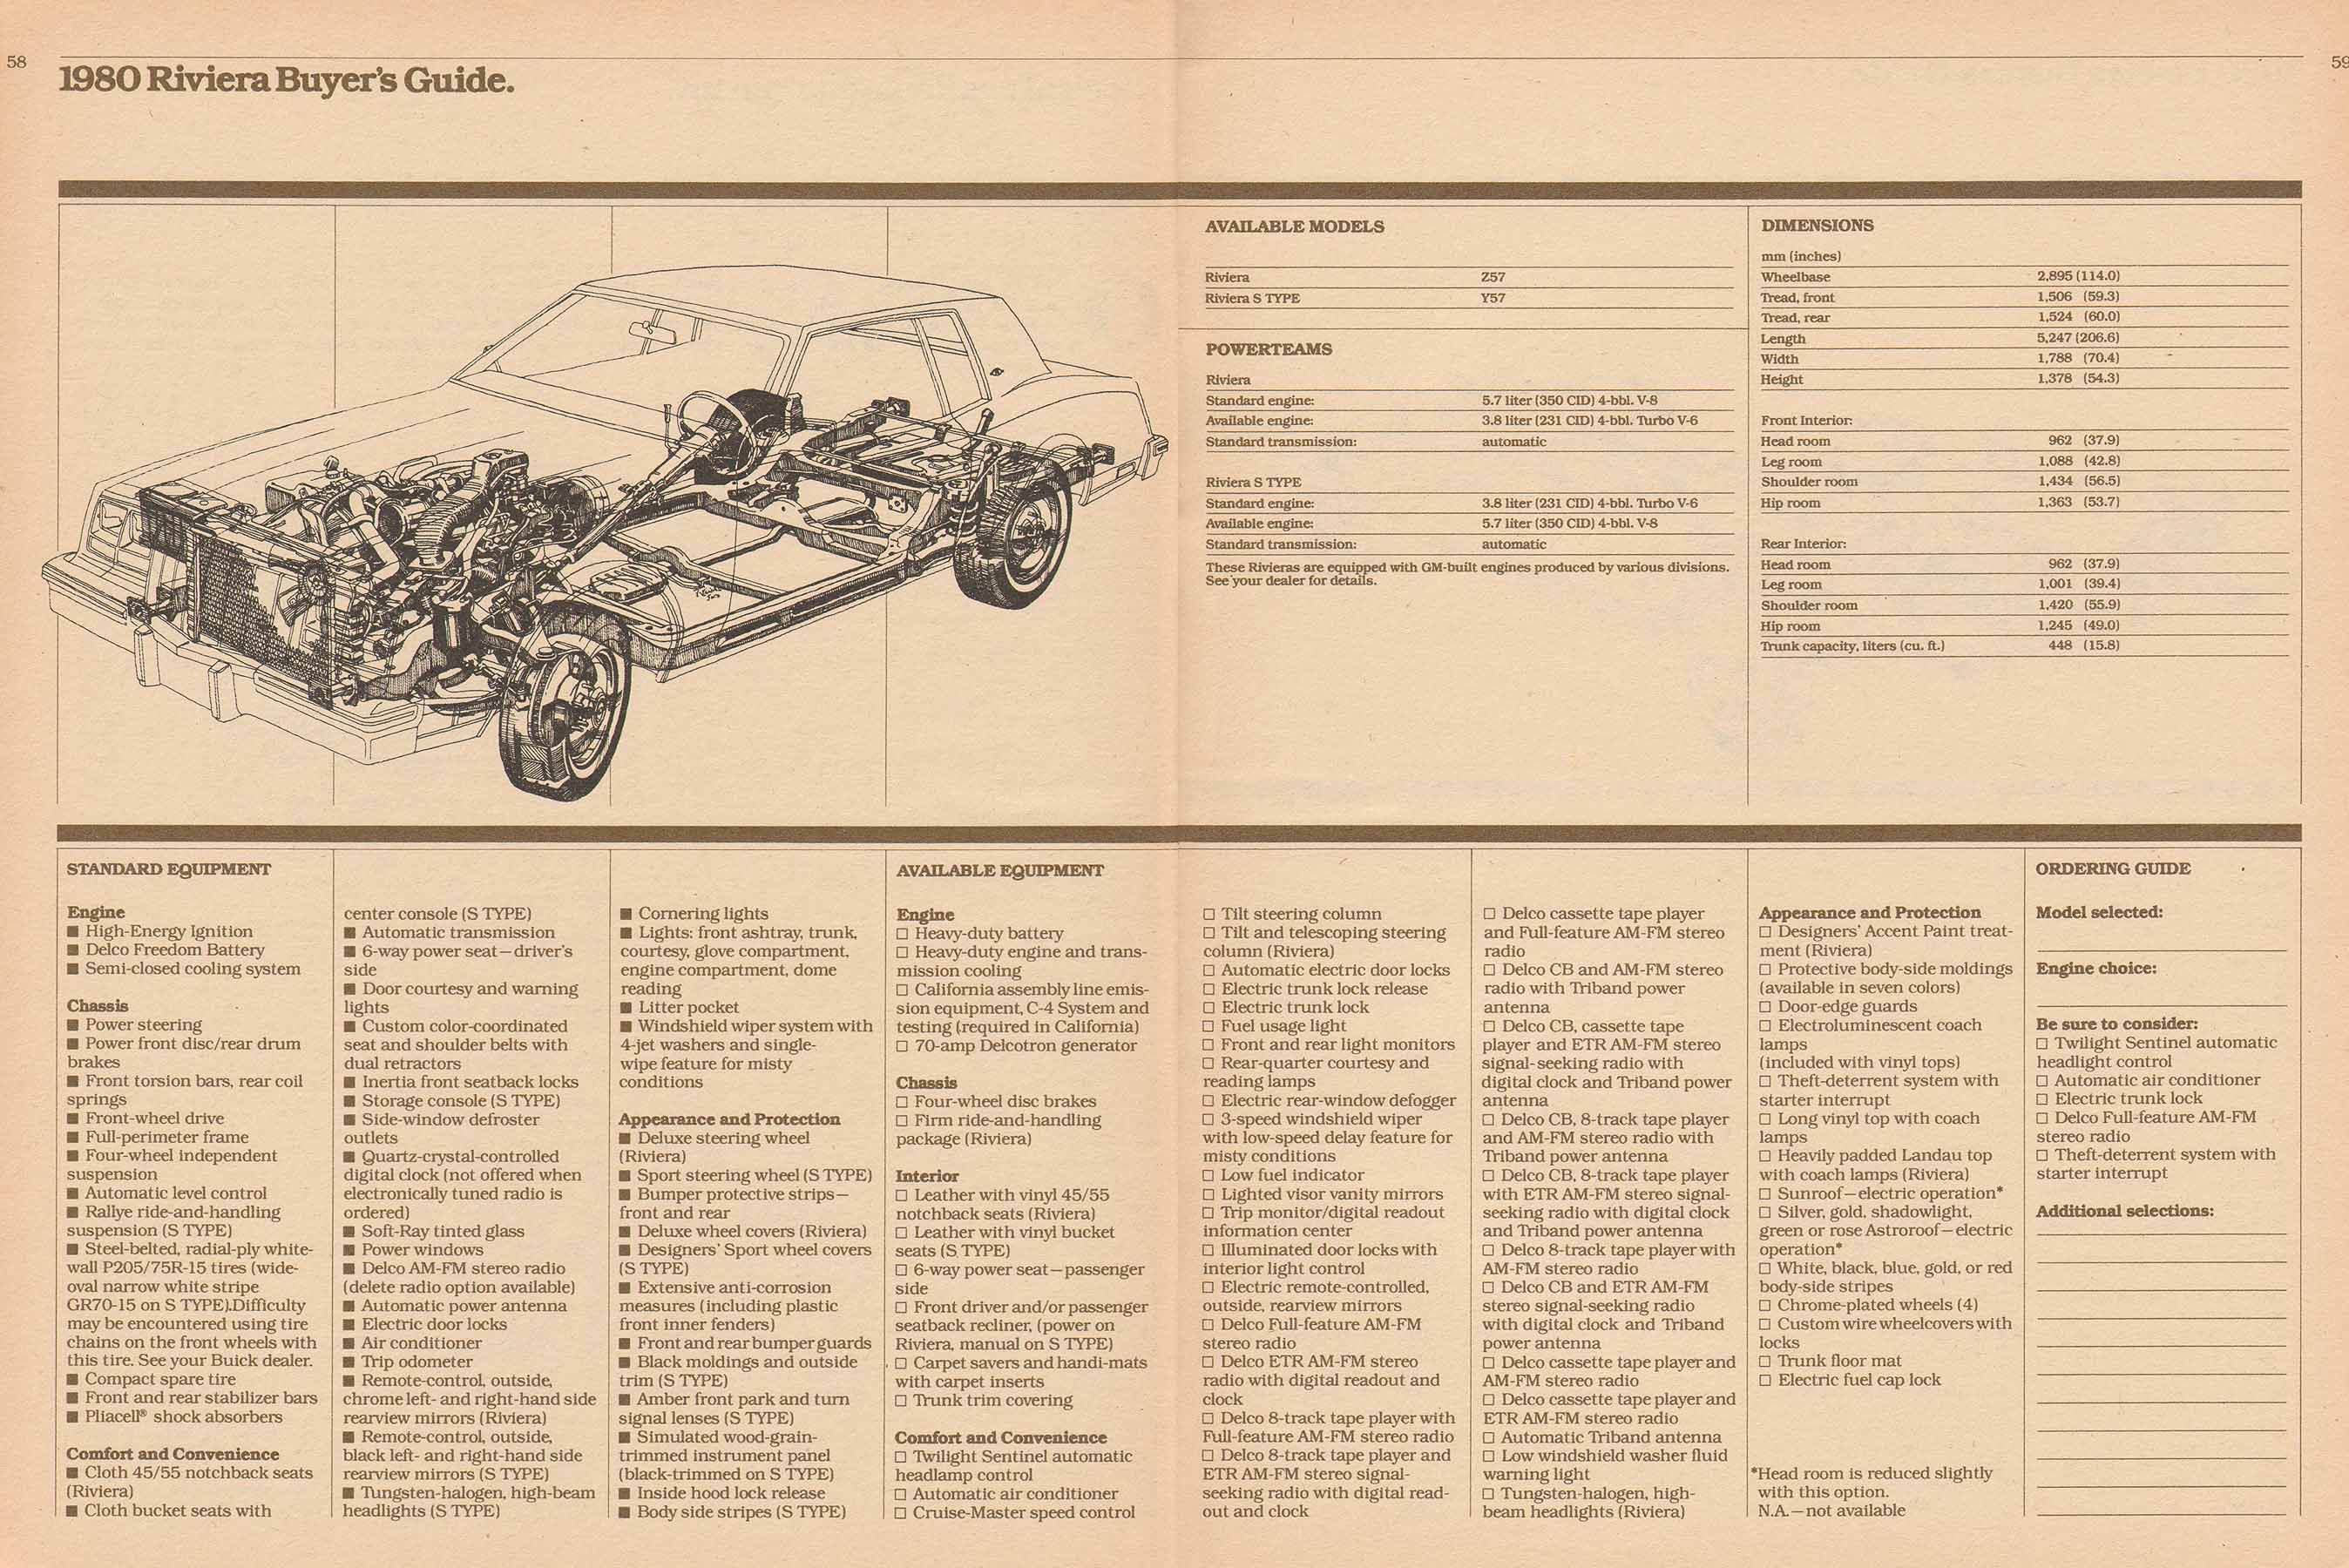 1980 Buick Full Line Prestige-58-59